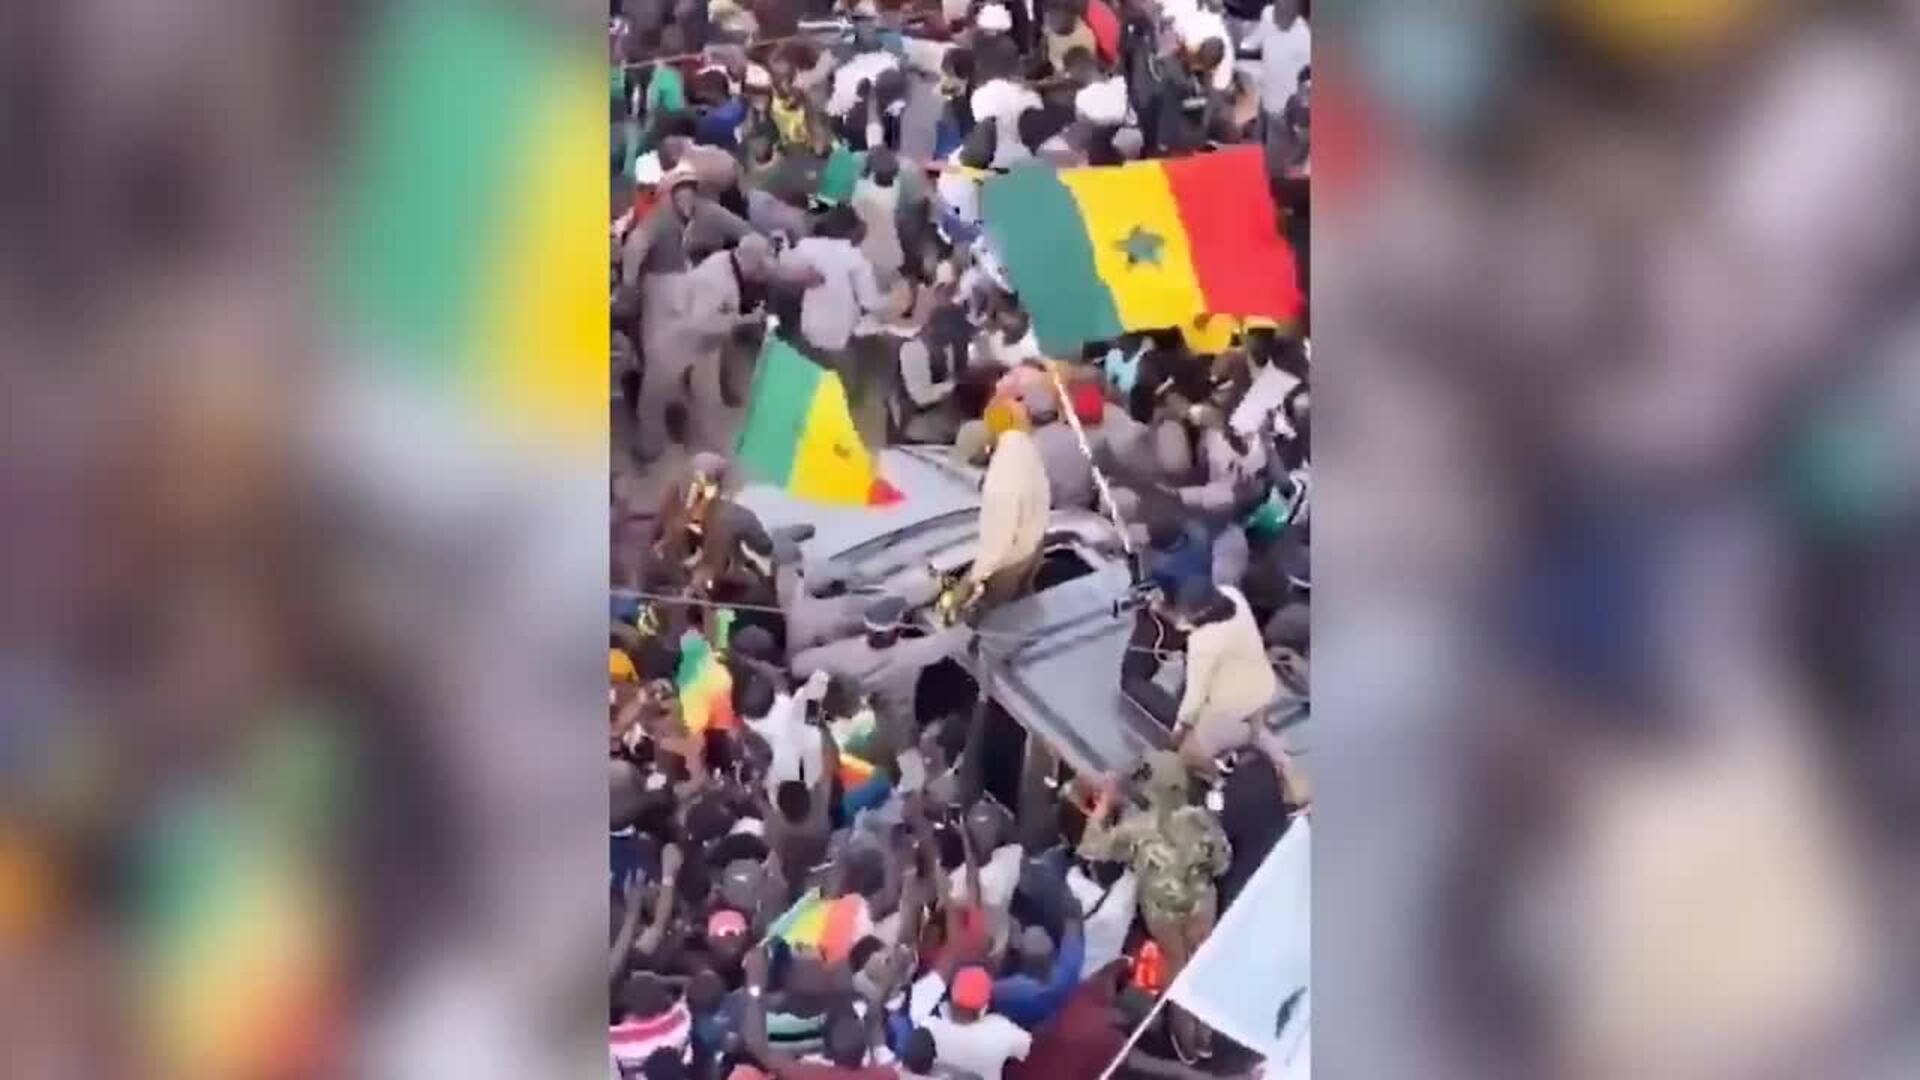 El presidente de Senegal nombra al hasta ahora líder opositor como primer ministro del país